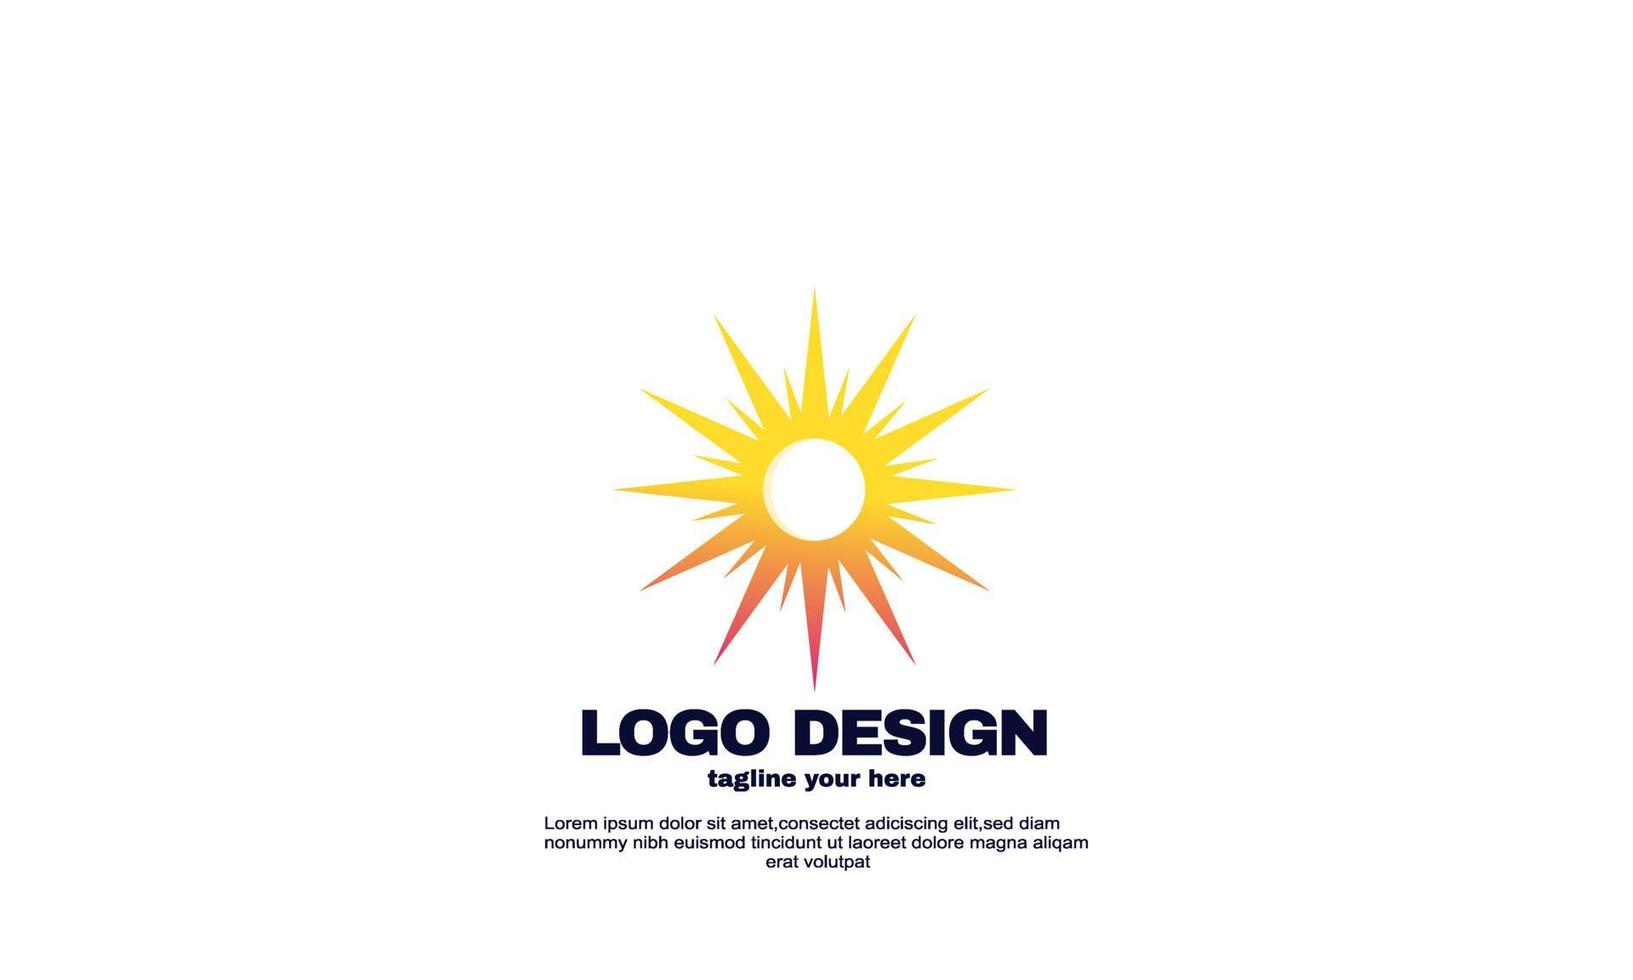 Vektor kreative Sonne Konzept Logo Design-Vorlage